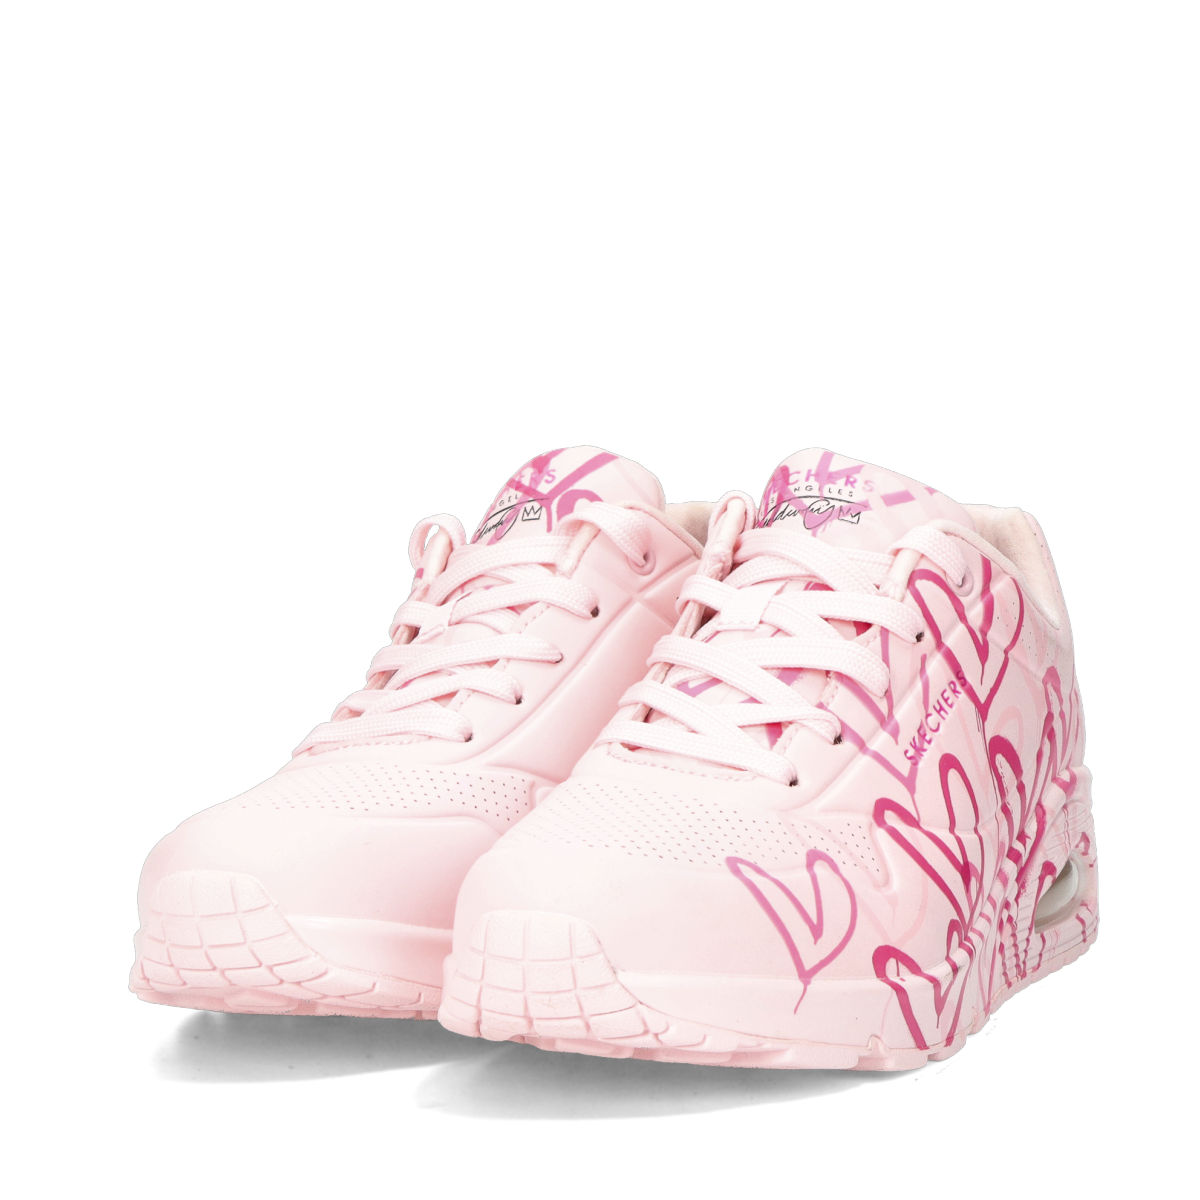 Skechers women's stylish sneaker - pink